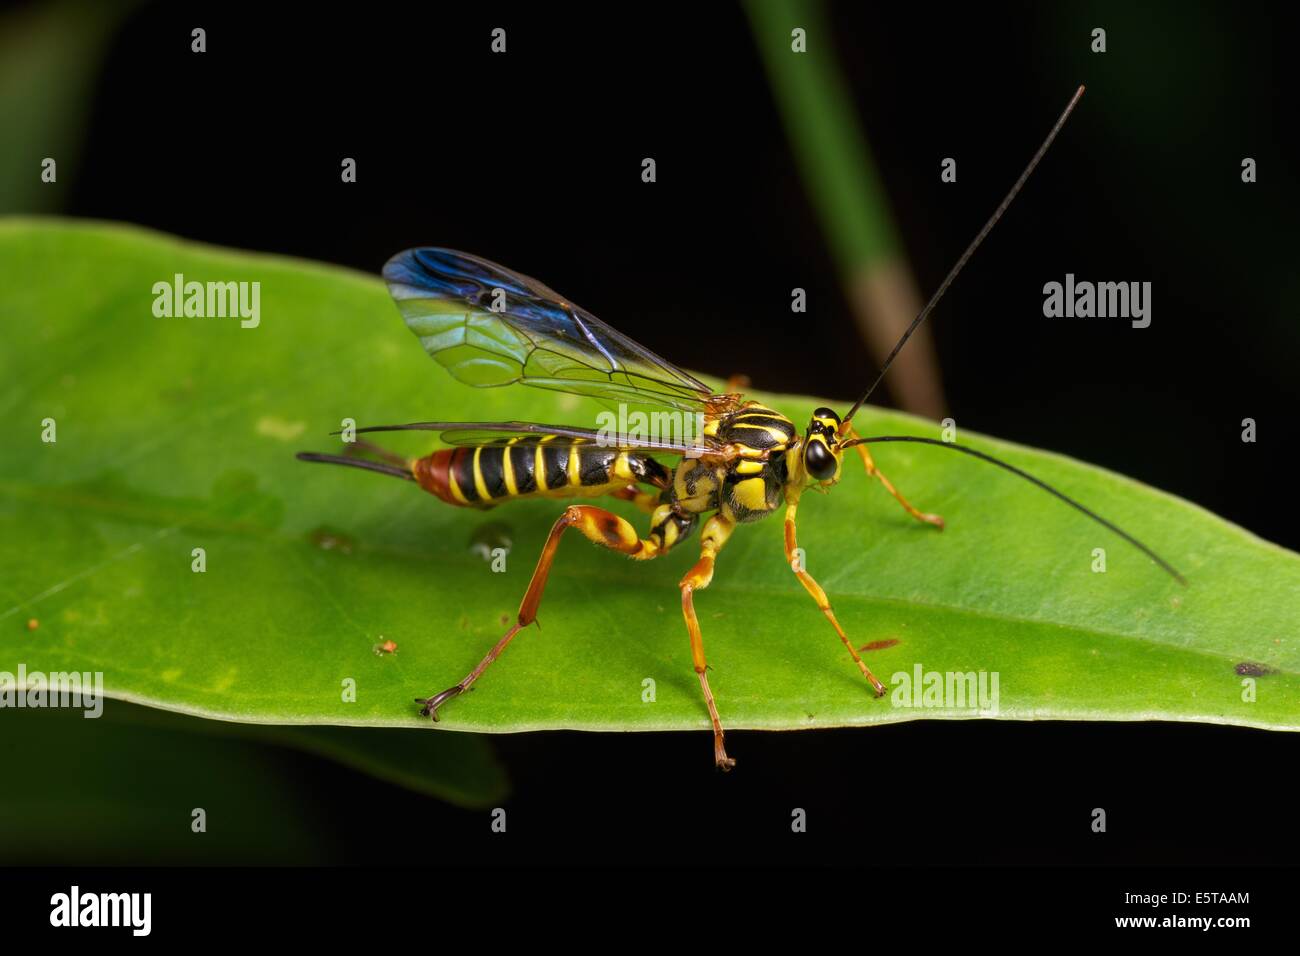 Die Ichneumonidae sind eine Familie innerhalb der Ordnung Hymenoptera. Insekten in dieser Familie werden Schlupfwespen bezeichnet. Stockfoto